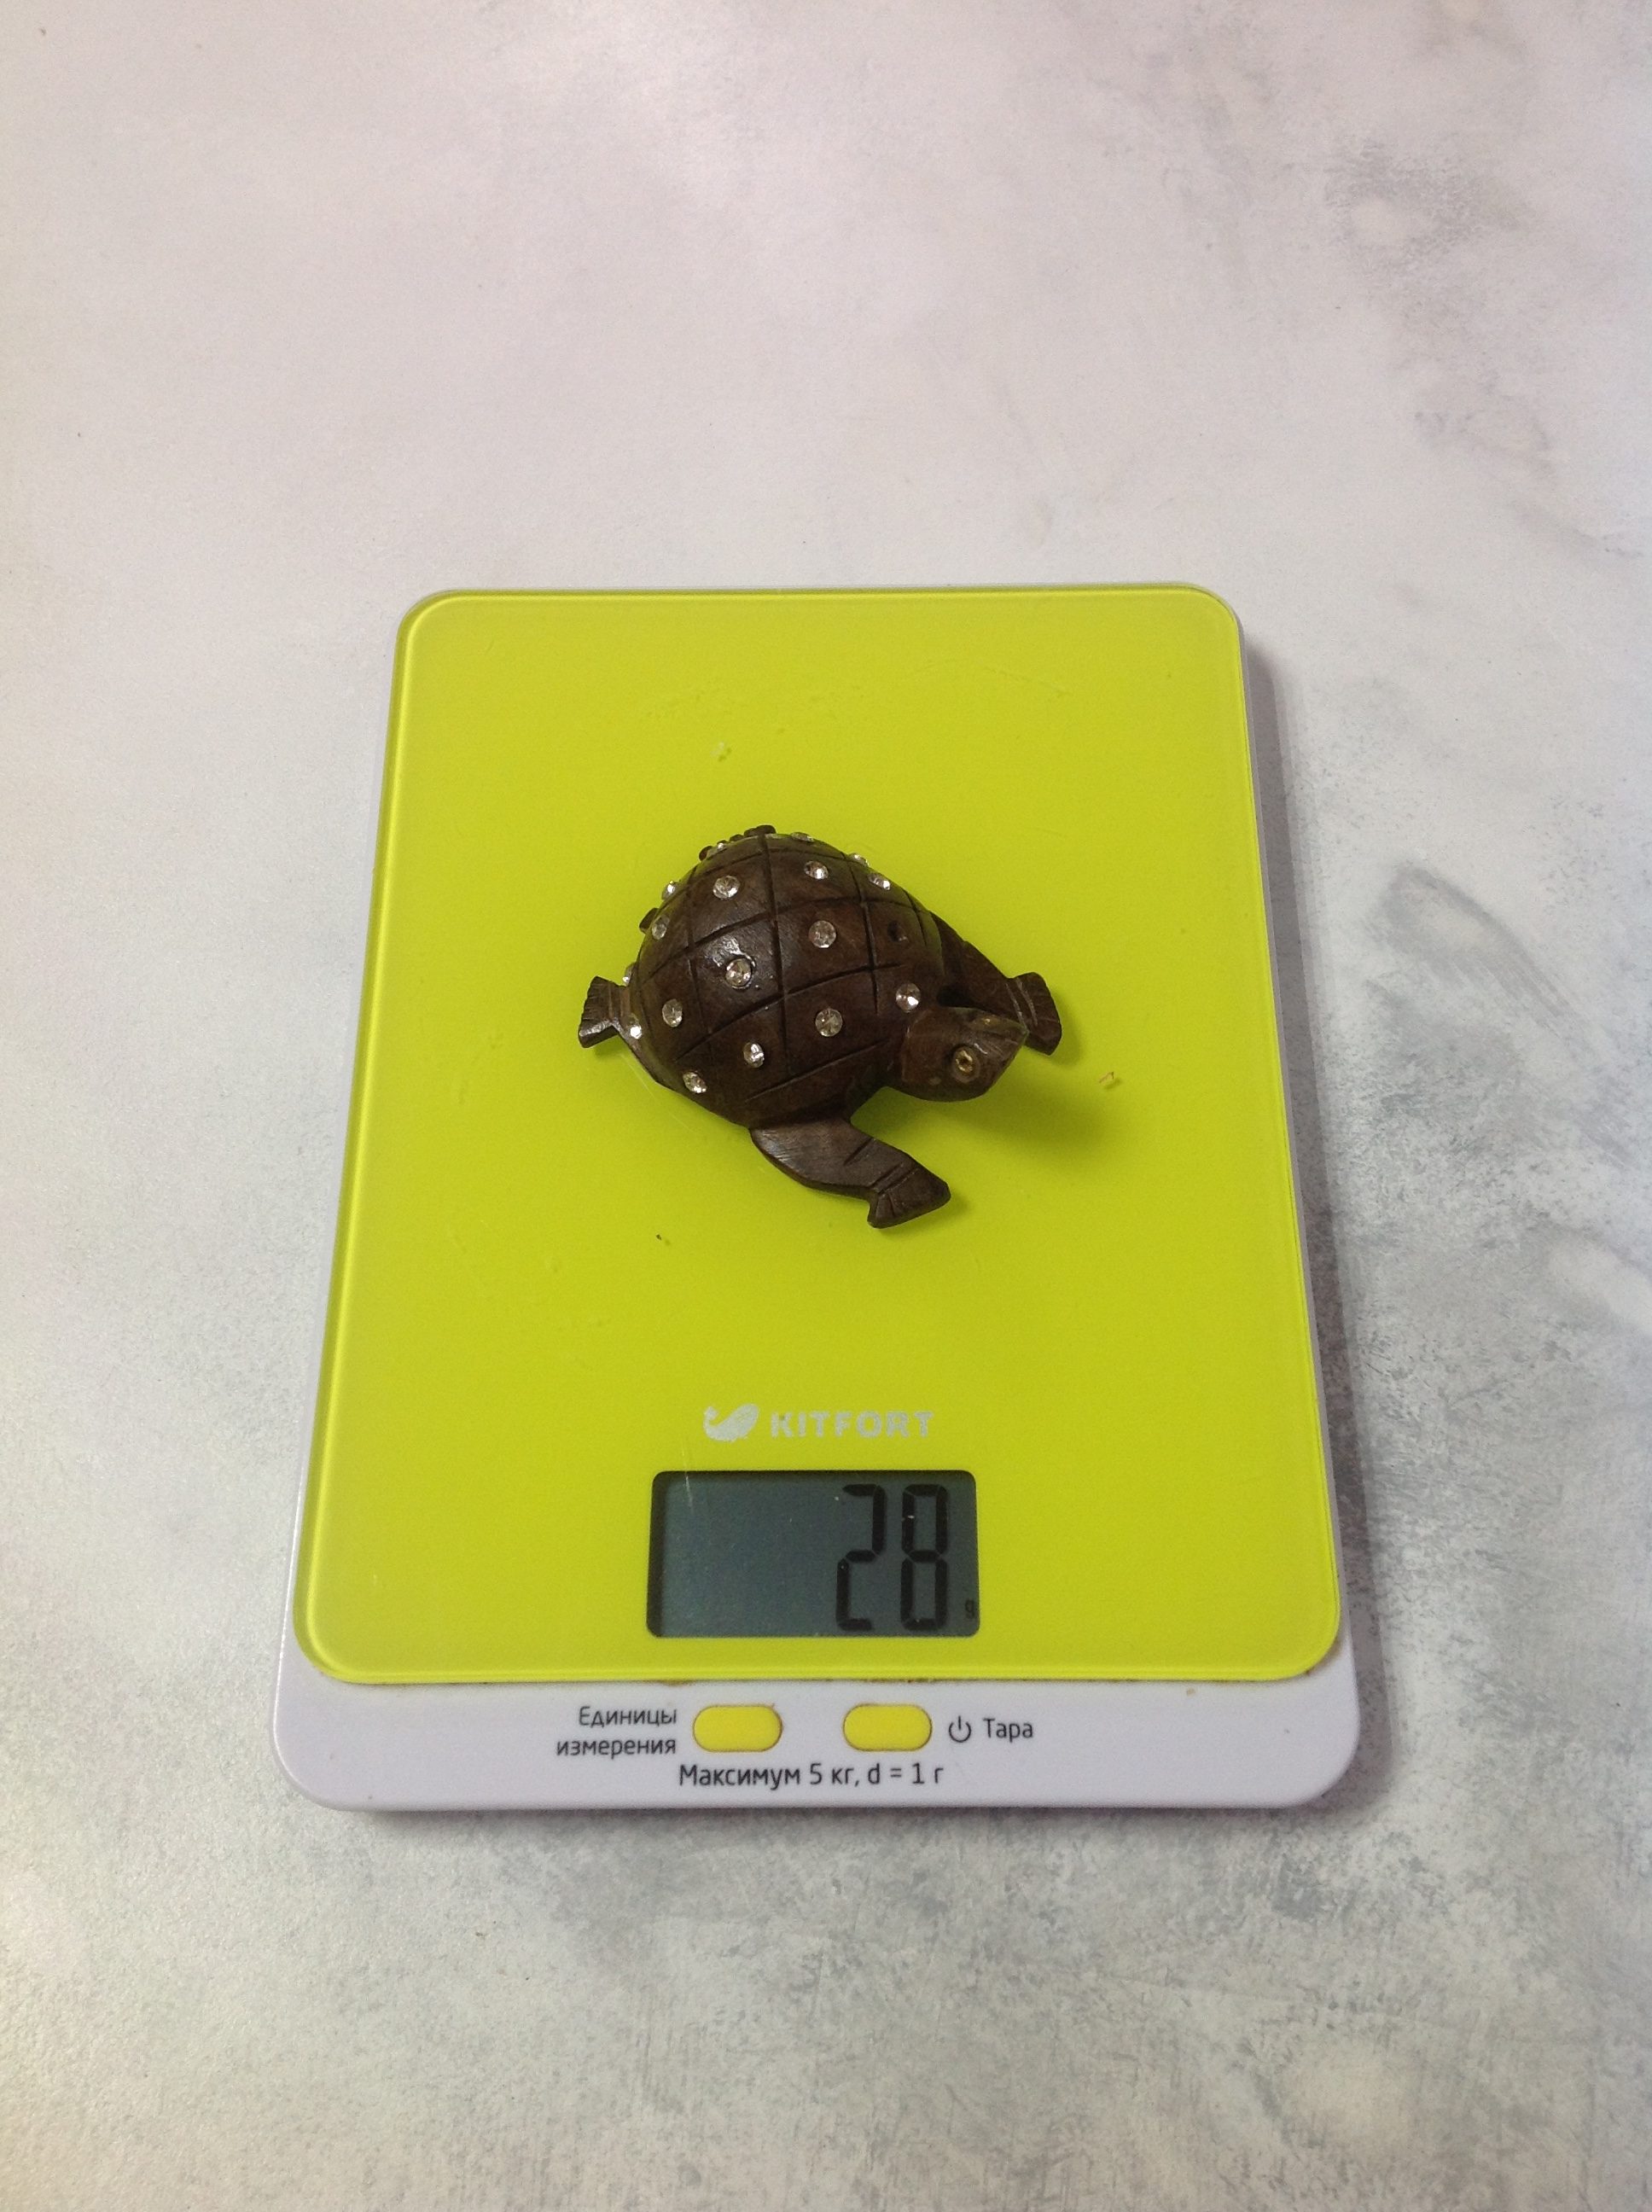 Сколько весит сувенирная черепаха из дерева малая?